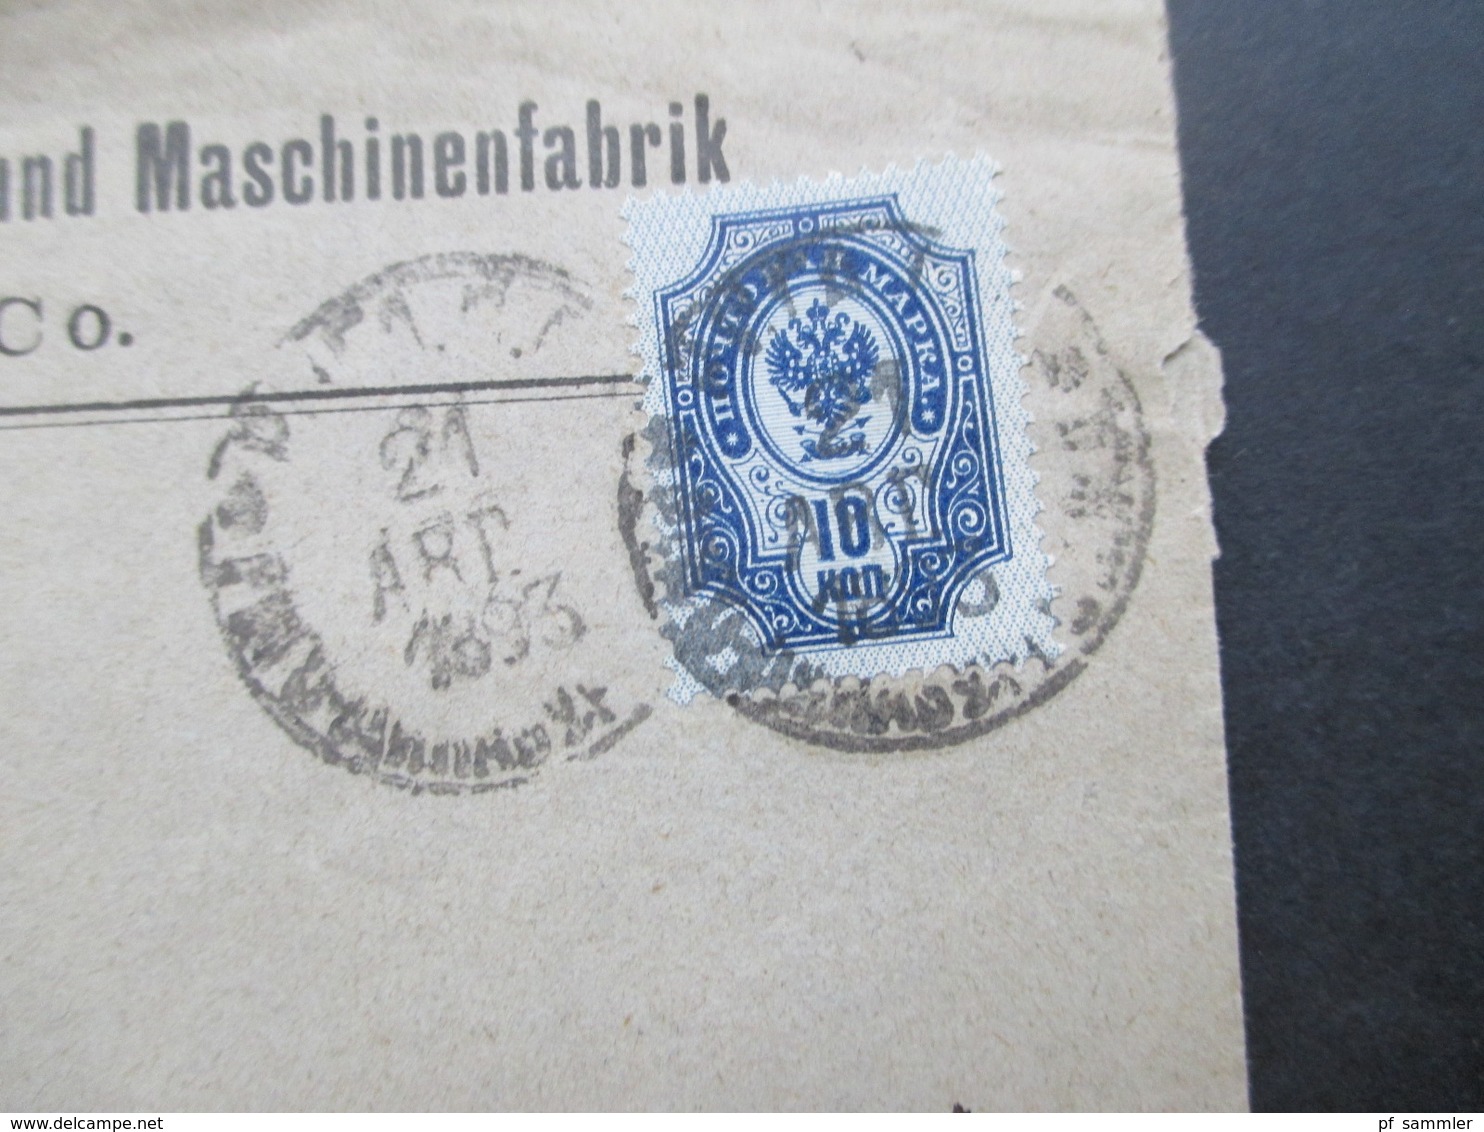 Russland 1893 Firmenbrief Der Gesellschaft Der Rigaer Eisengiesserei Und Maschinenfabrik Vom. Felser & Co Post Deuben - Covers & Documents